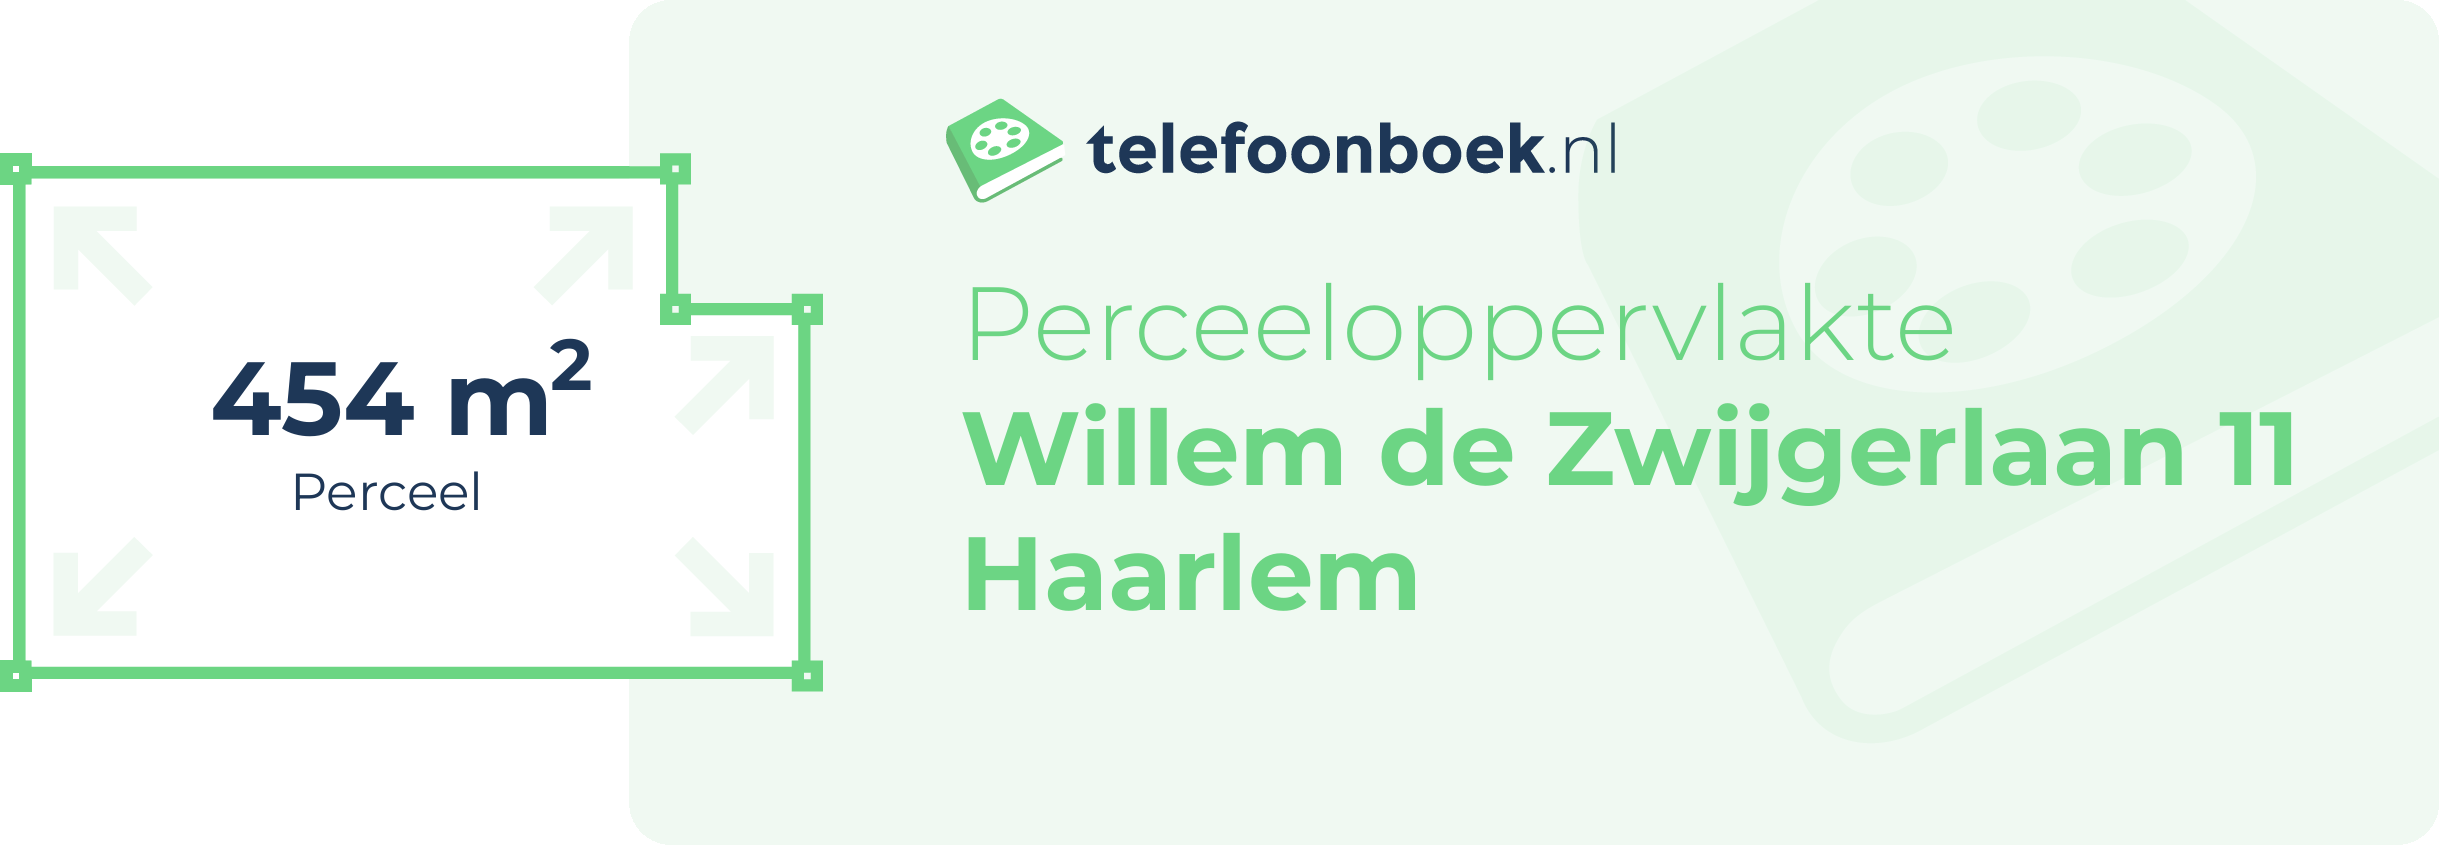 Perceeloppervlakte Willem De Zwijgerlaan 11 Haarlem